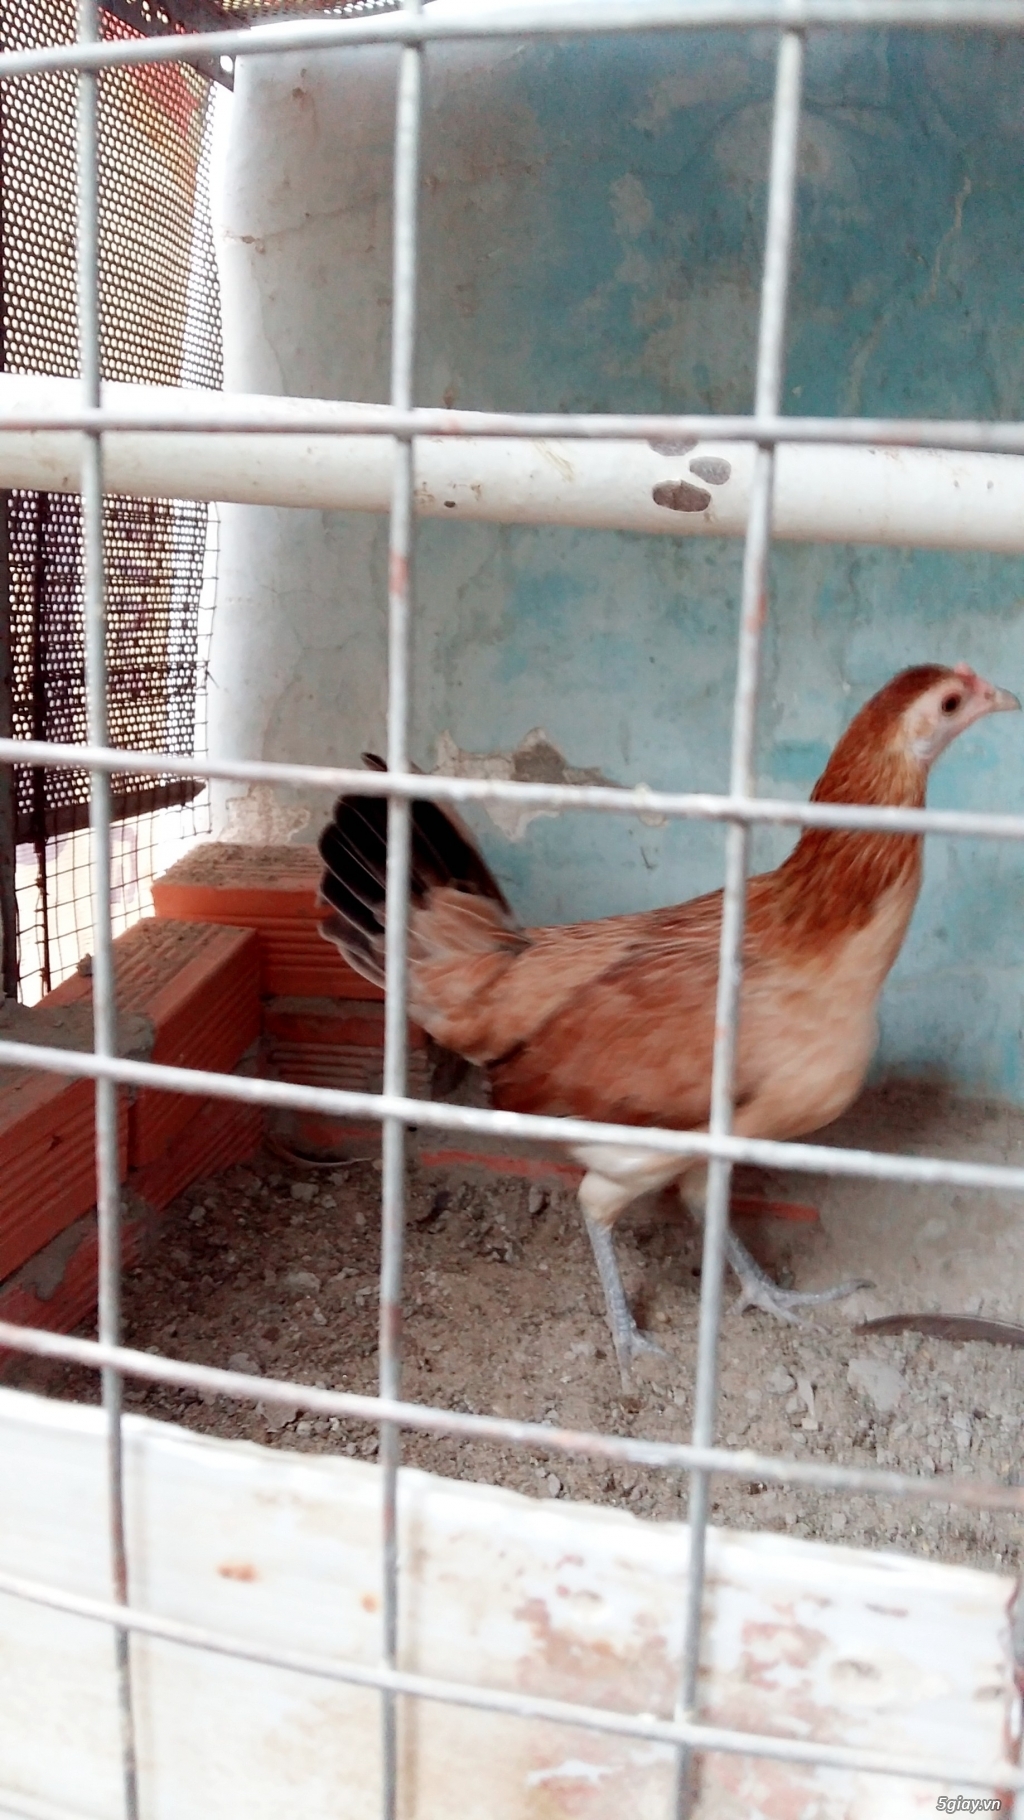 HCM -  Cần bán gấp 3 chú gà đẹp , khỏe mạnh - 1